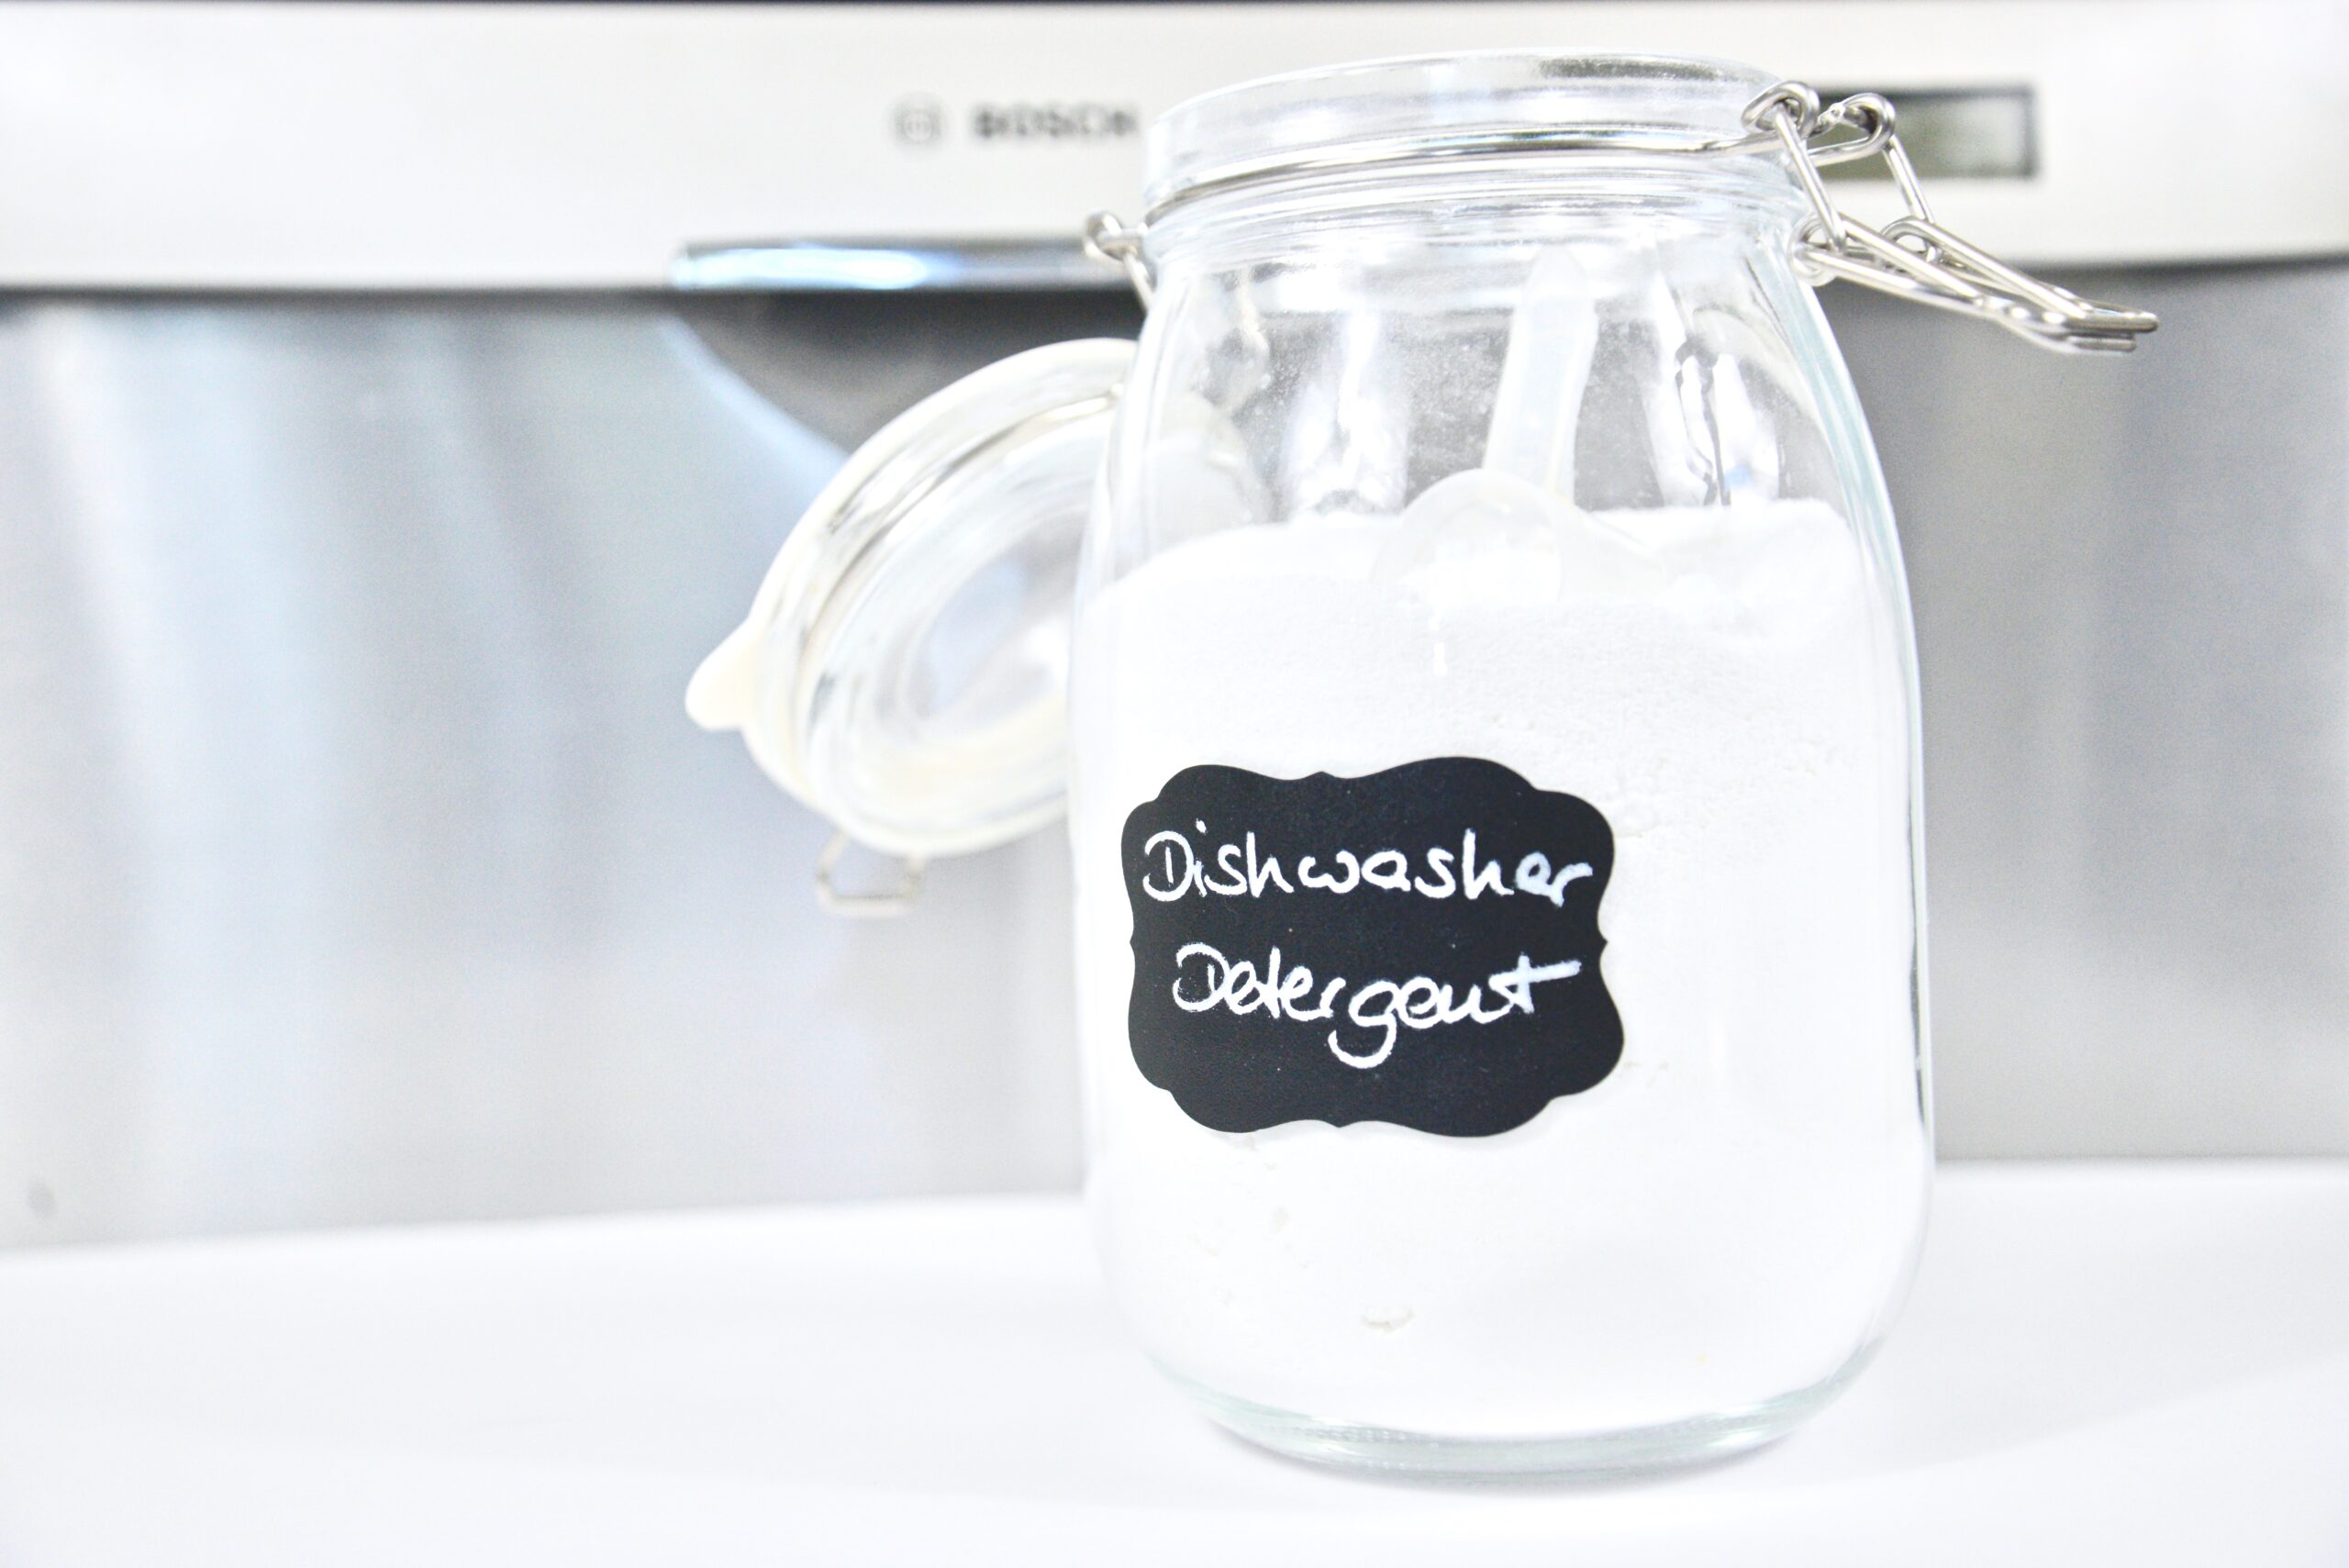 Make Your Own Dishwasher Detergent